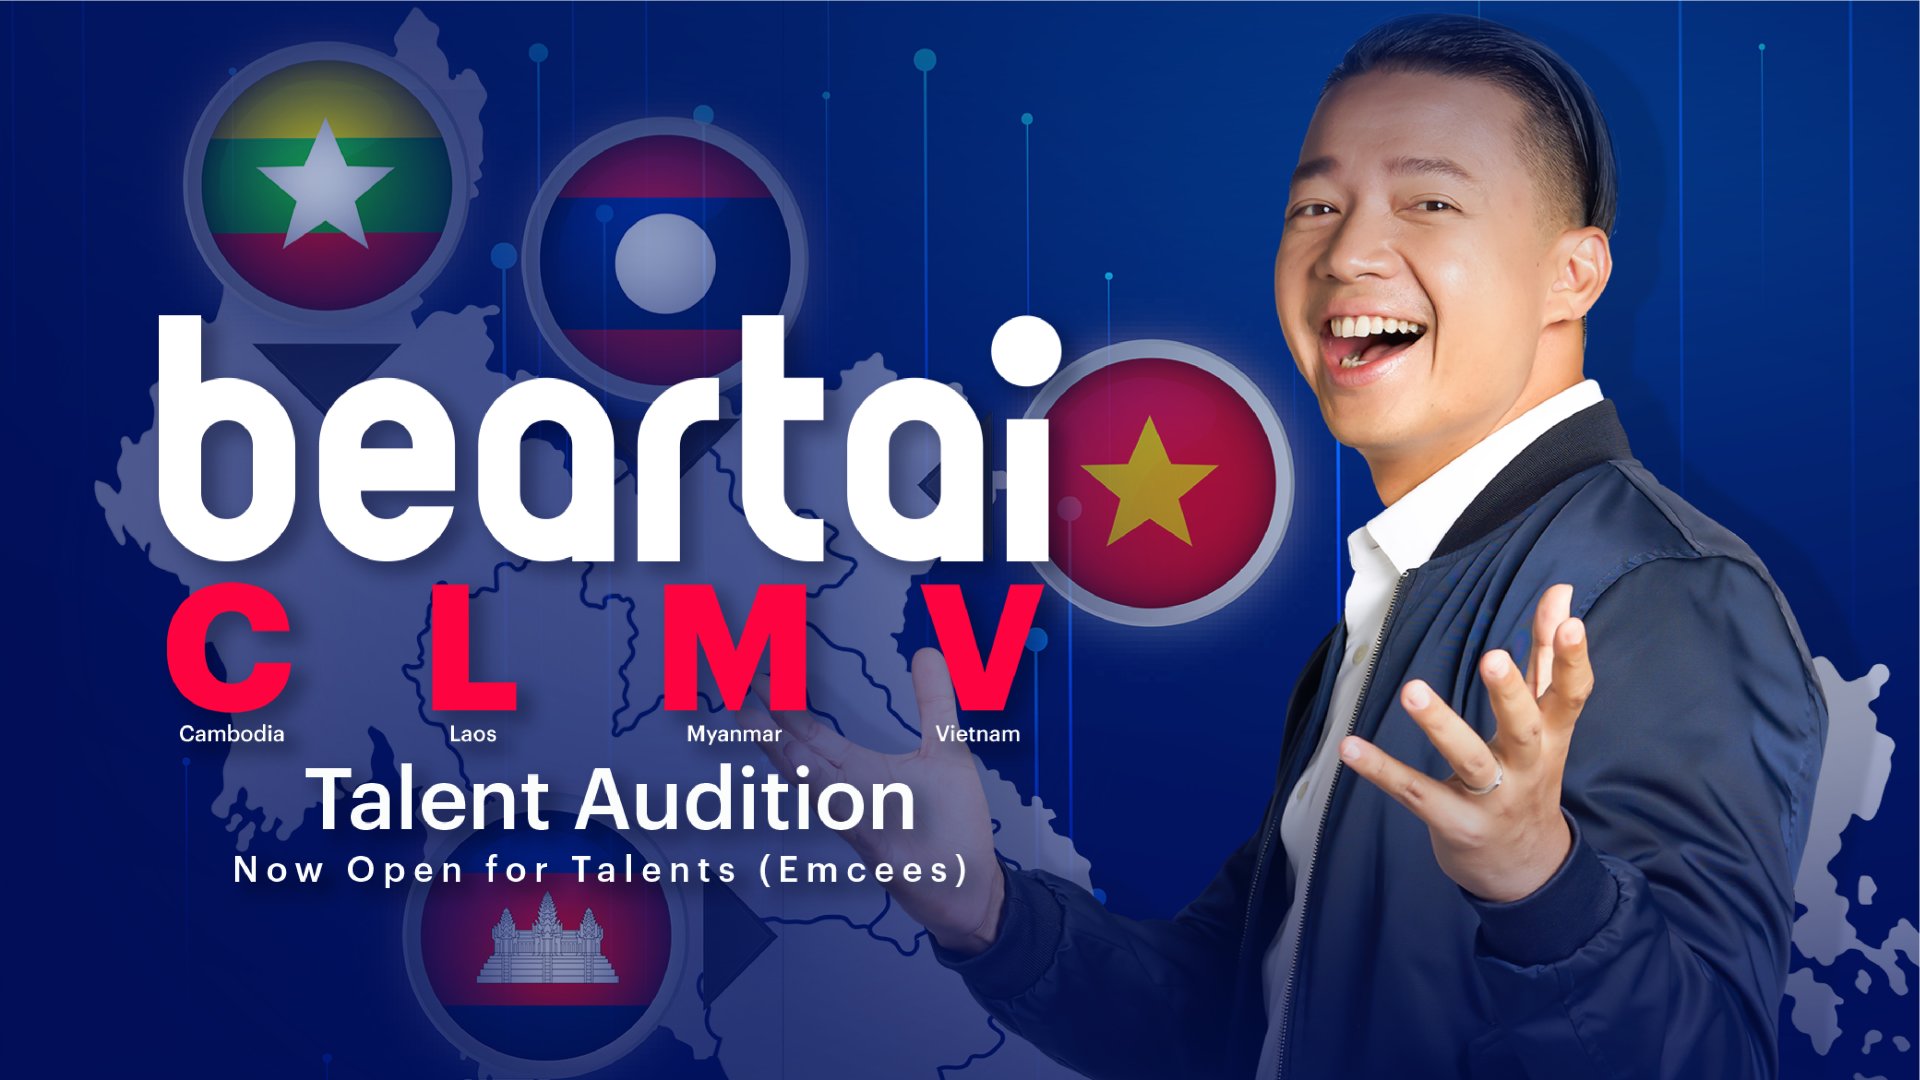 คว้าโอกาสนี้เพื่อเป็น beartai CLMV Talent !